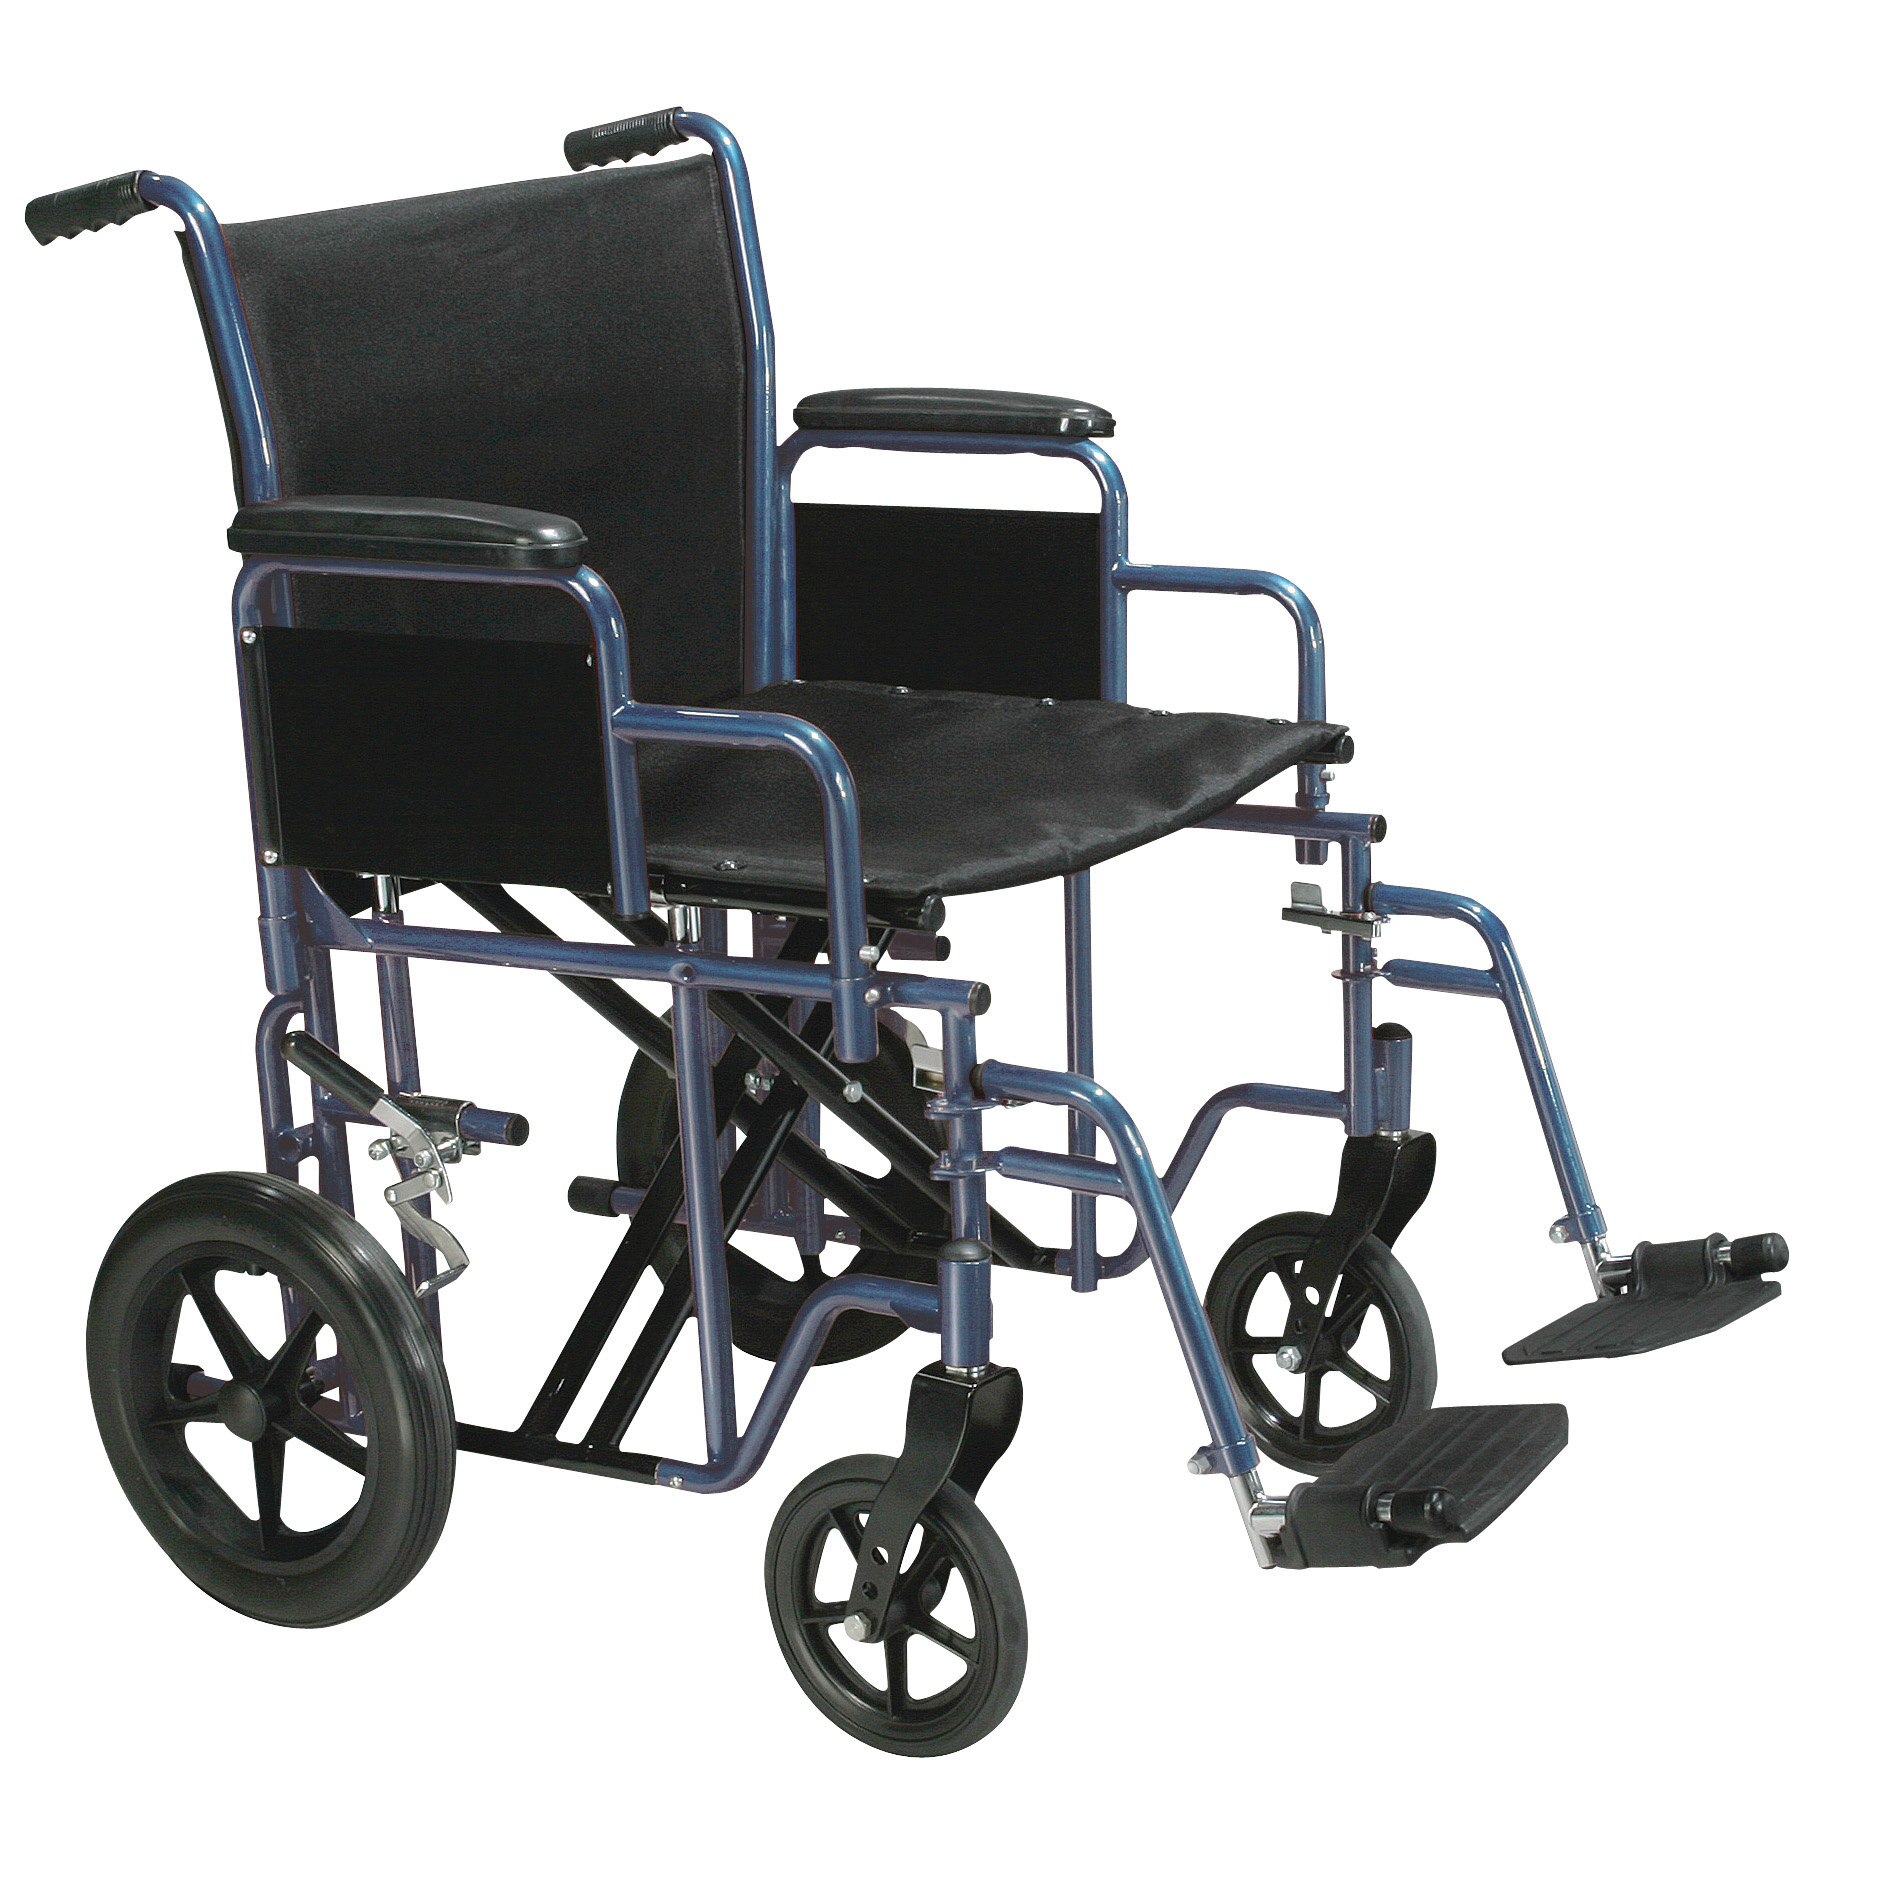 Drive Medical - Silla de traslado resistente, uso bariátrico, con reposapiés oscilantes, asiento de 22